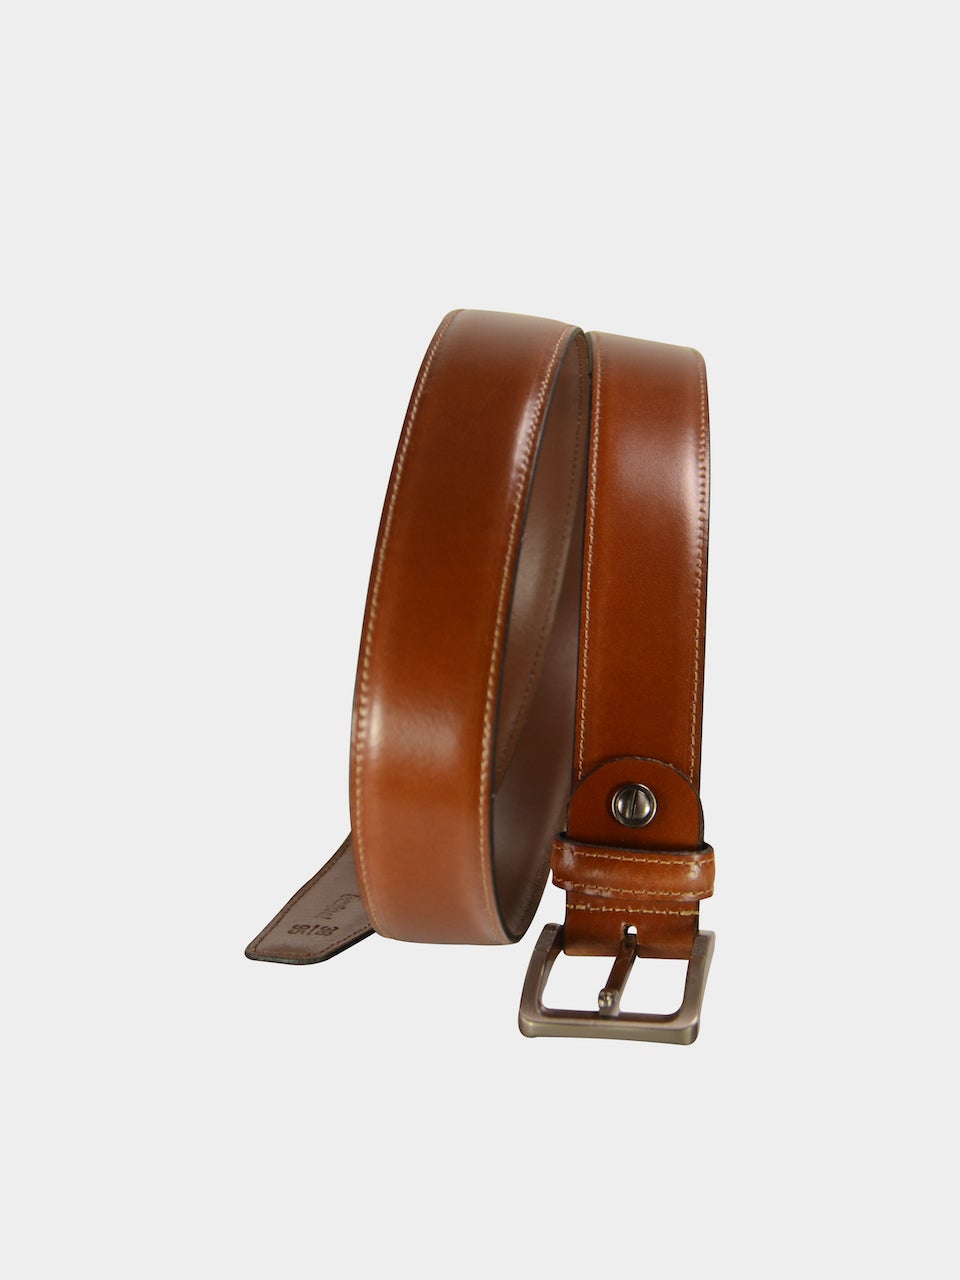 Barjeel Uno Men Slim Belts in Tan Leather